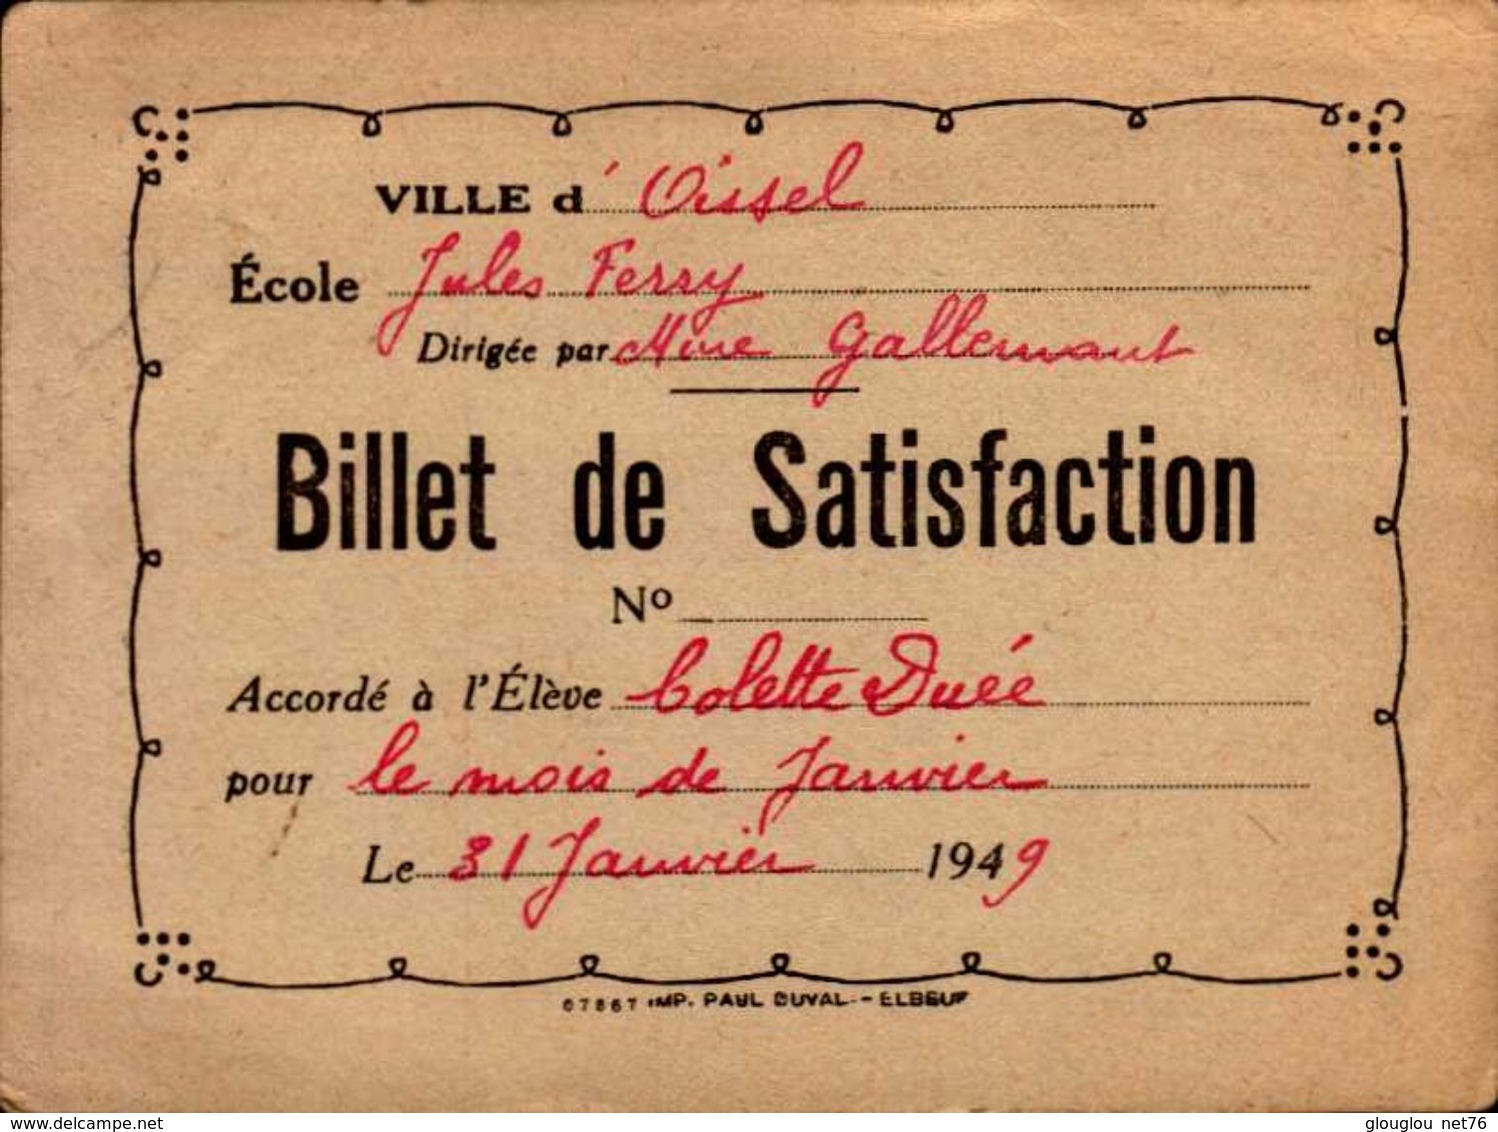 BILLET DE SATISFACTION  VILLE D'OISSEL  ECOLE JULES FERRY EN 1949  Mme COLETTE DUEE - Diplômes & Bulletins Scolaires